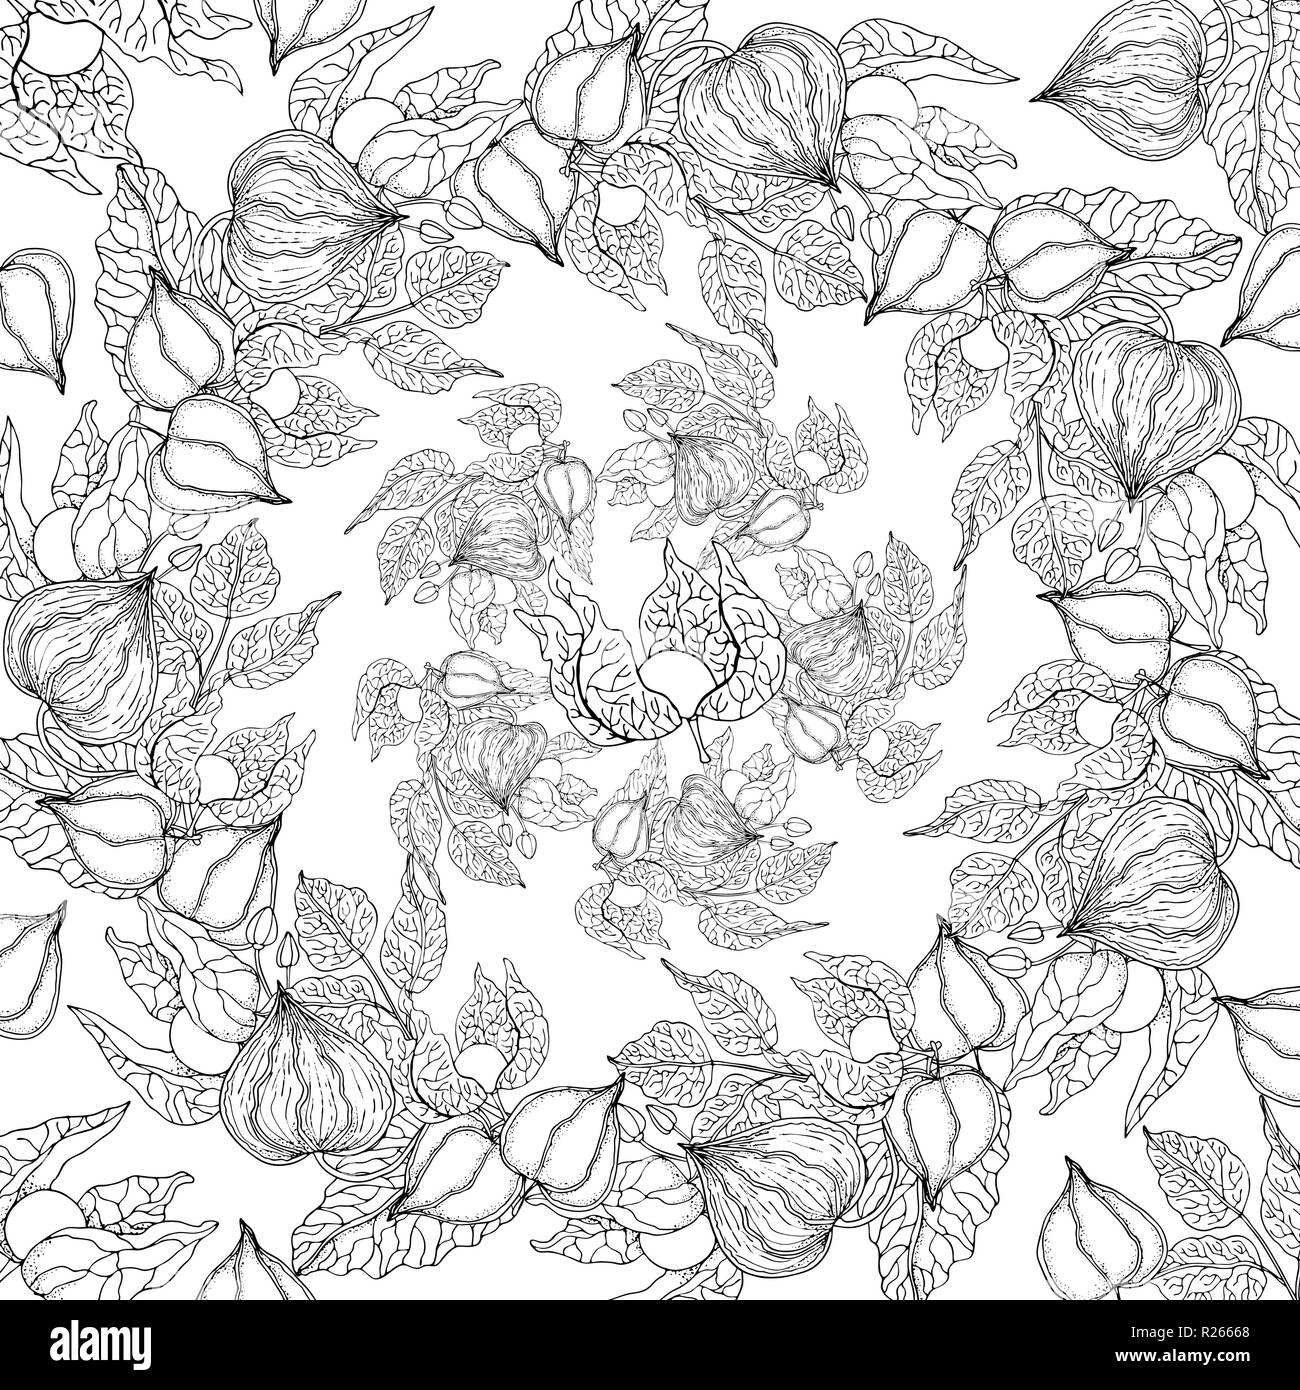 Doodle floral background en vecteur de doodles noir et blanc à colorier Illustration de Vecteur